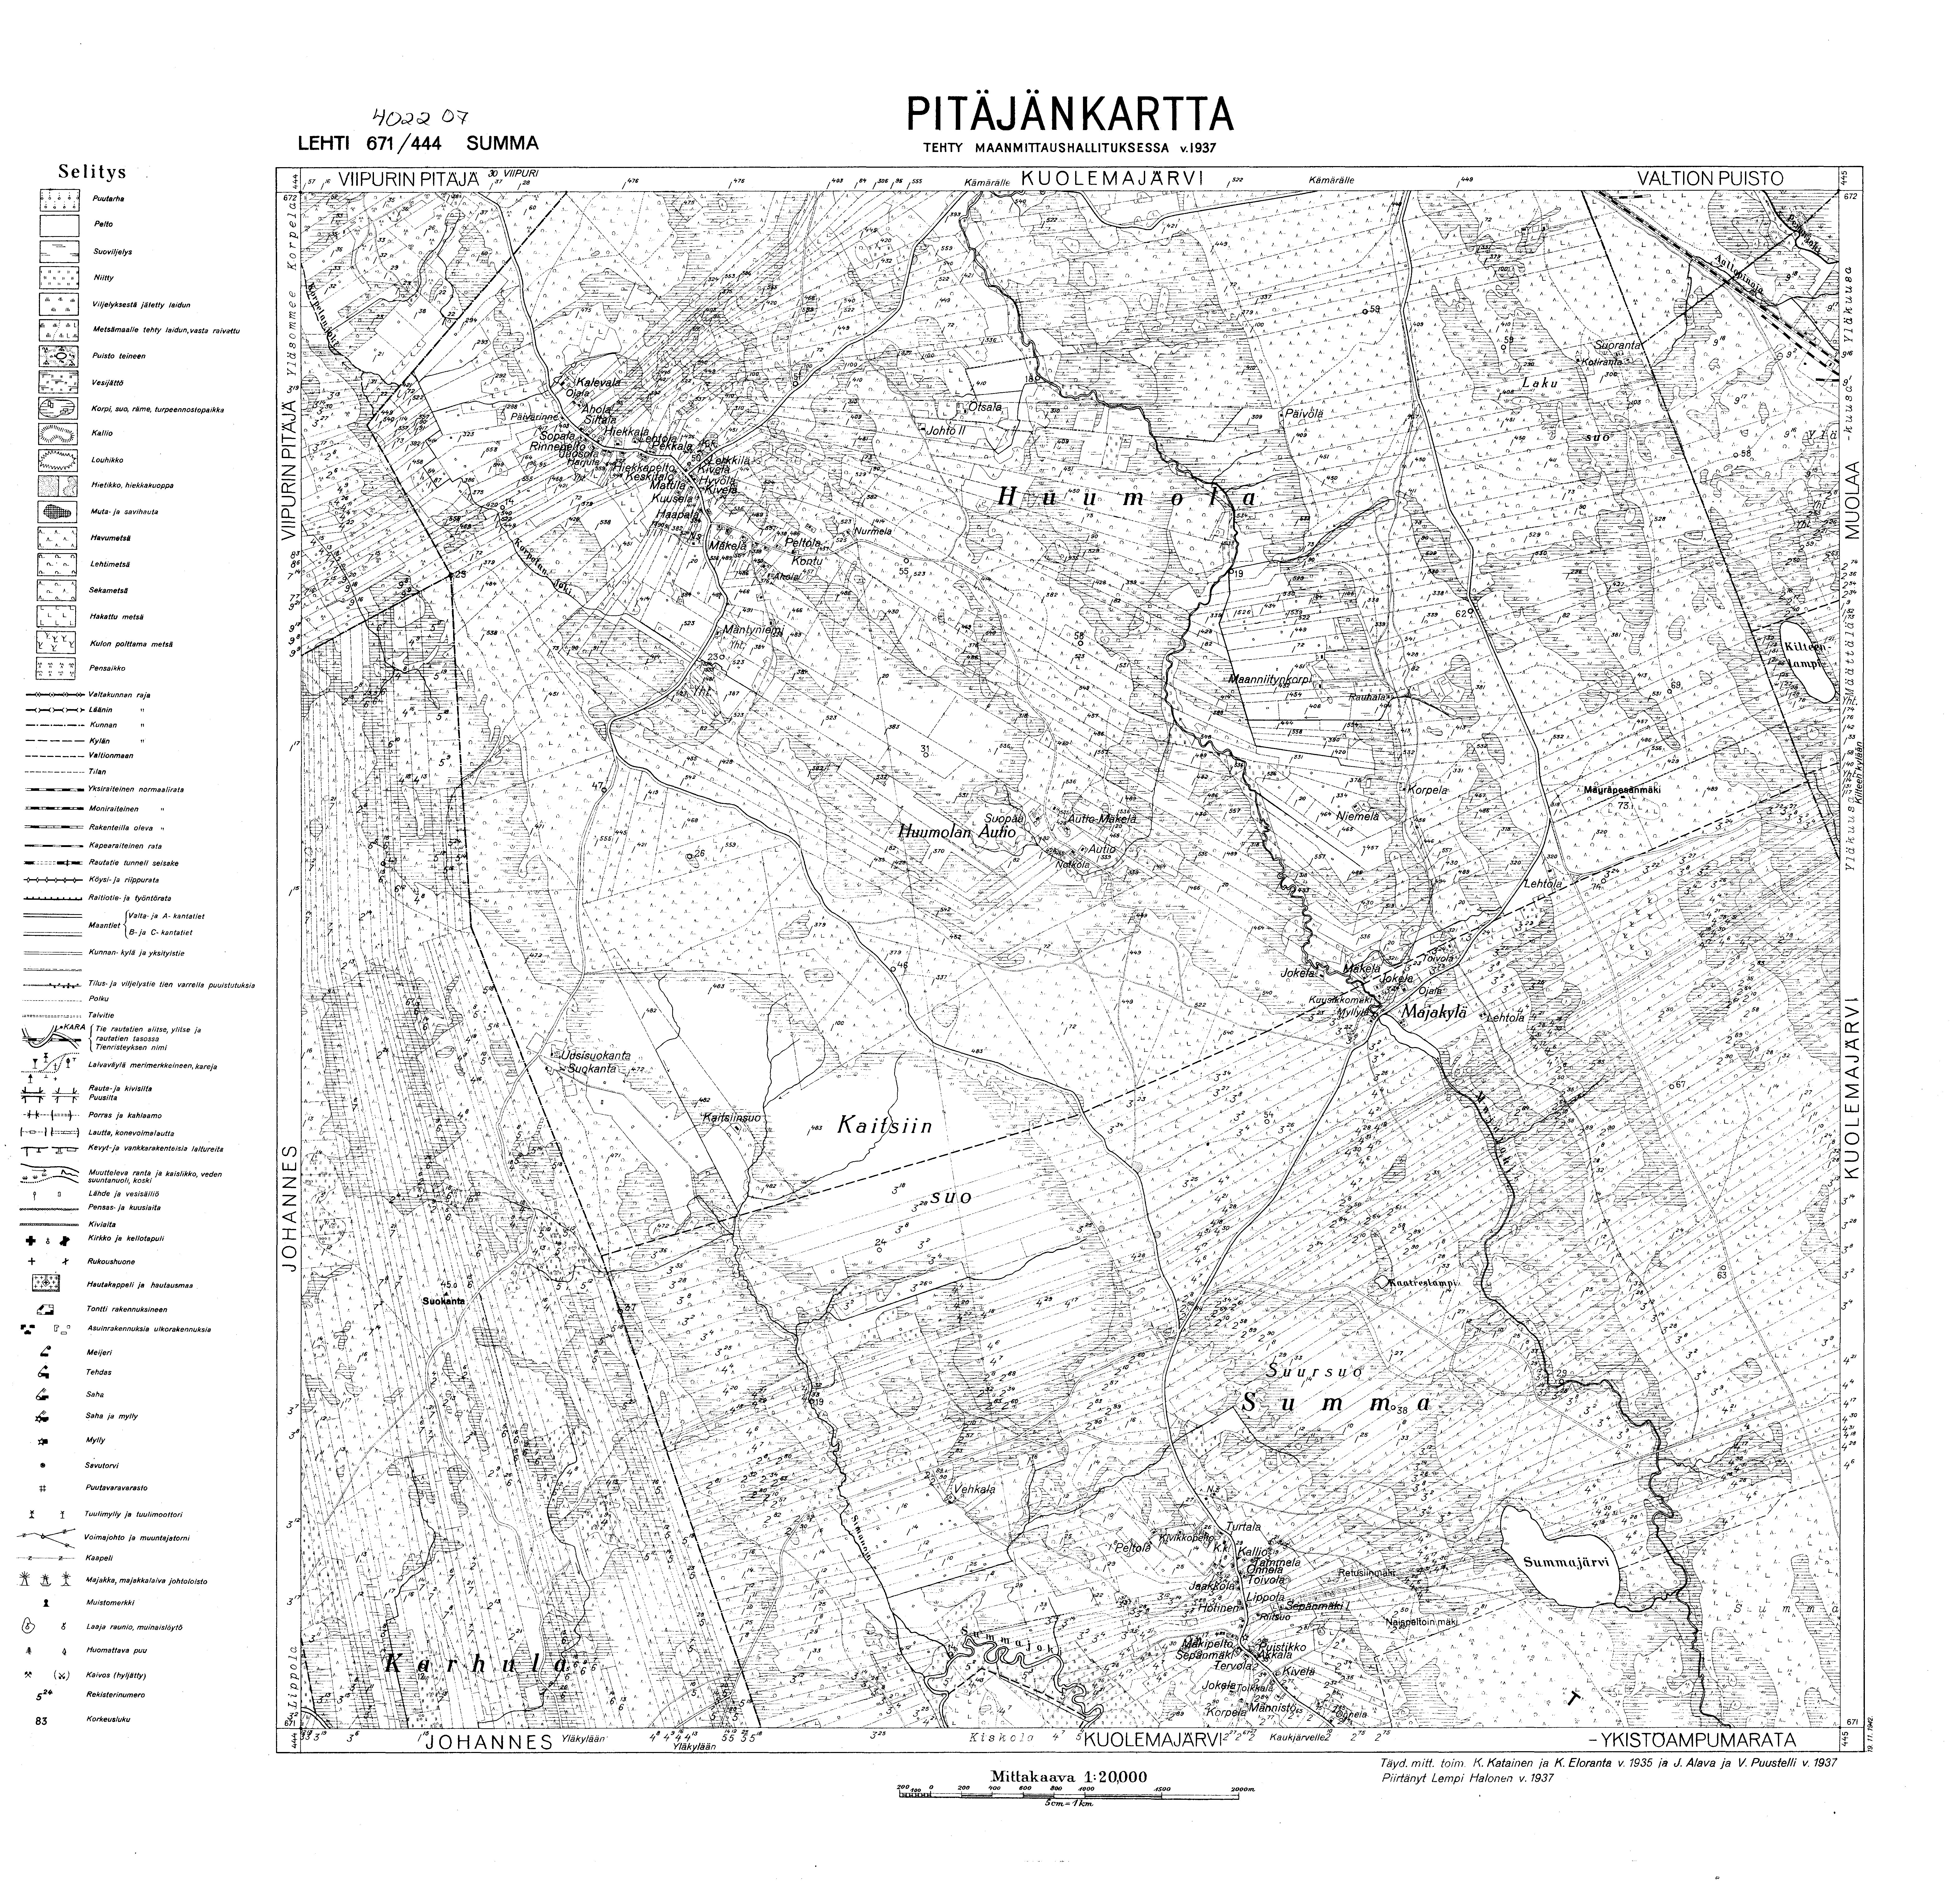 Summa Village Site. Summa. Pitäjänkartta 402207. Parish map from 1937